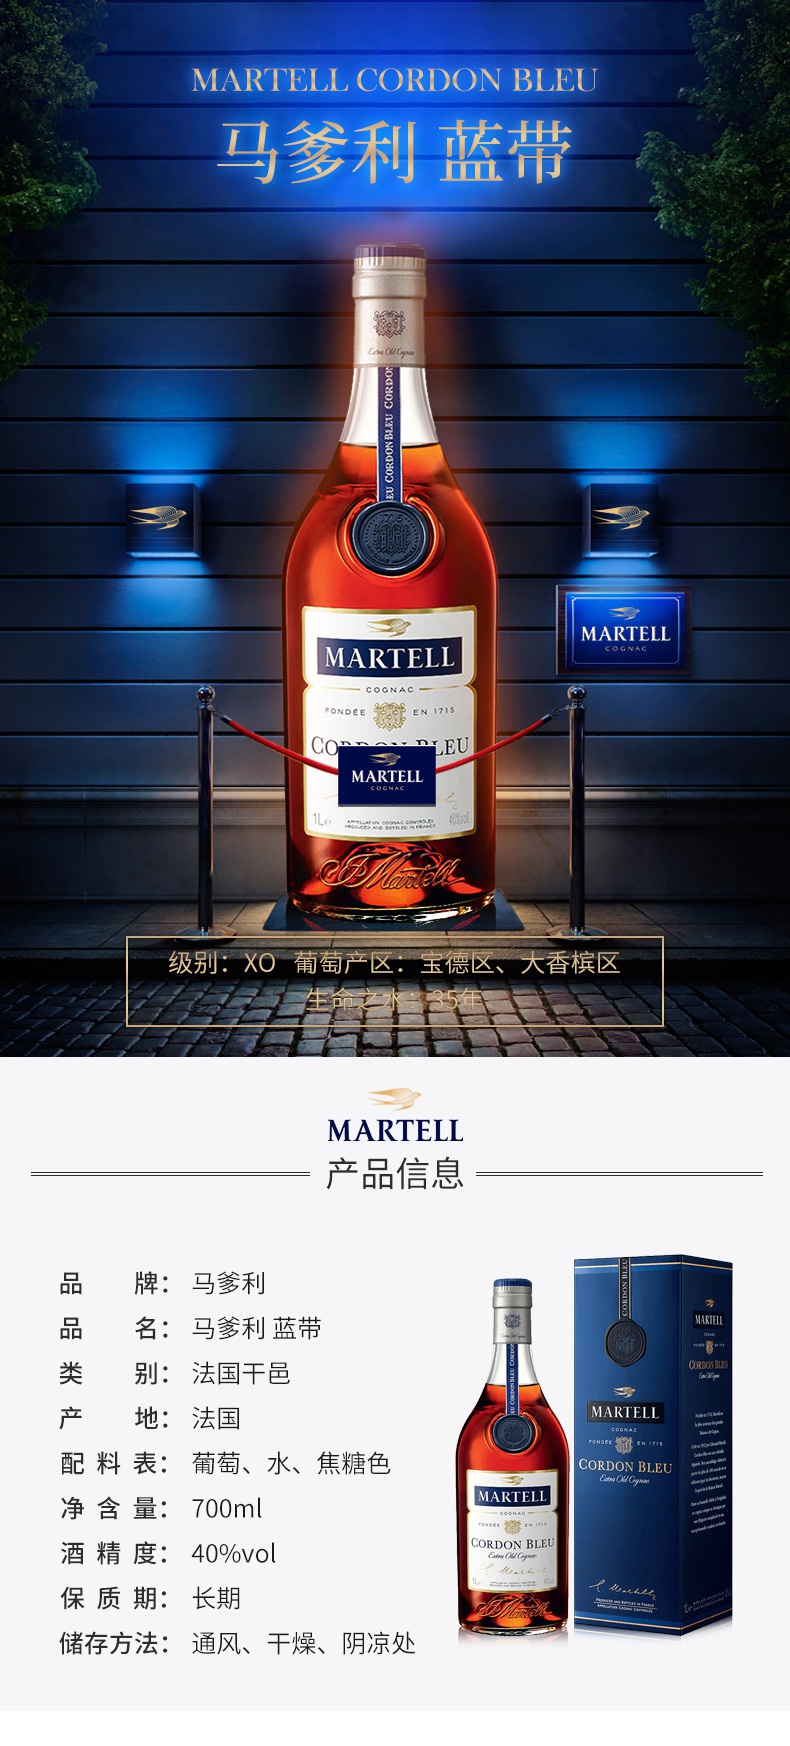 2瓶装法国martell马爹利蓝带干邑白兰地700ml洋酒烈酒原瓶进口两瓶装